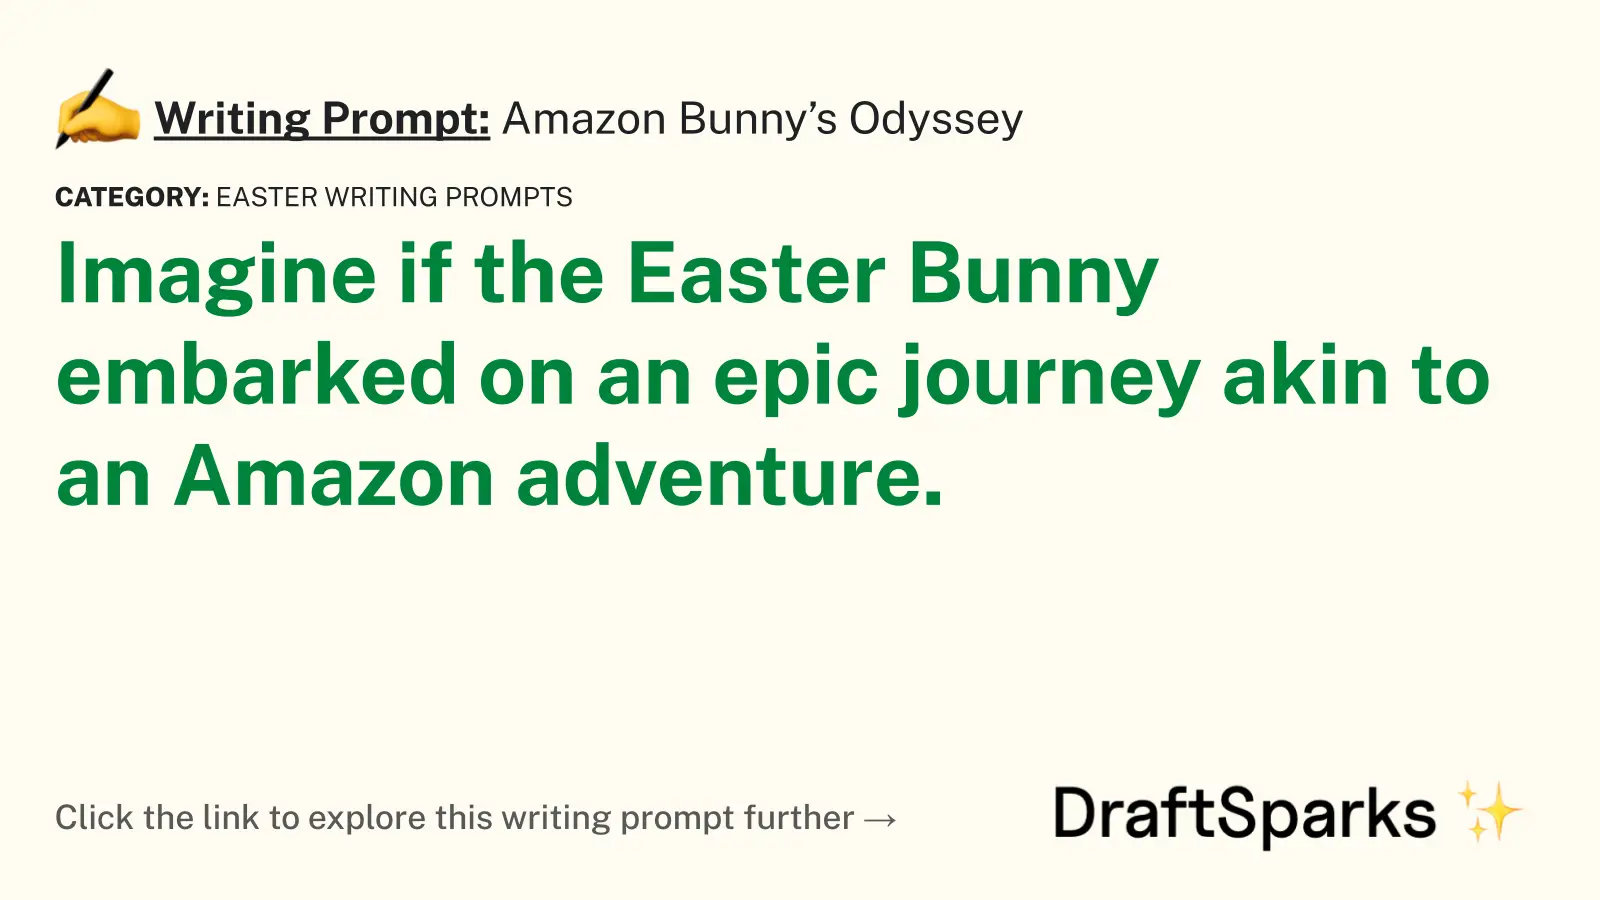 Amazon Bunny’s Odyssey